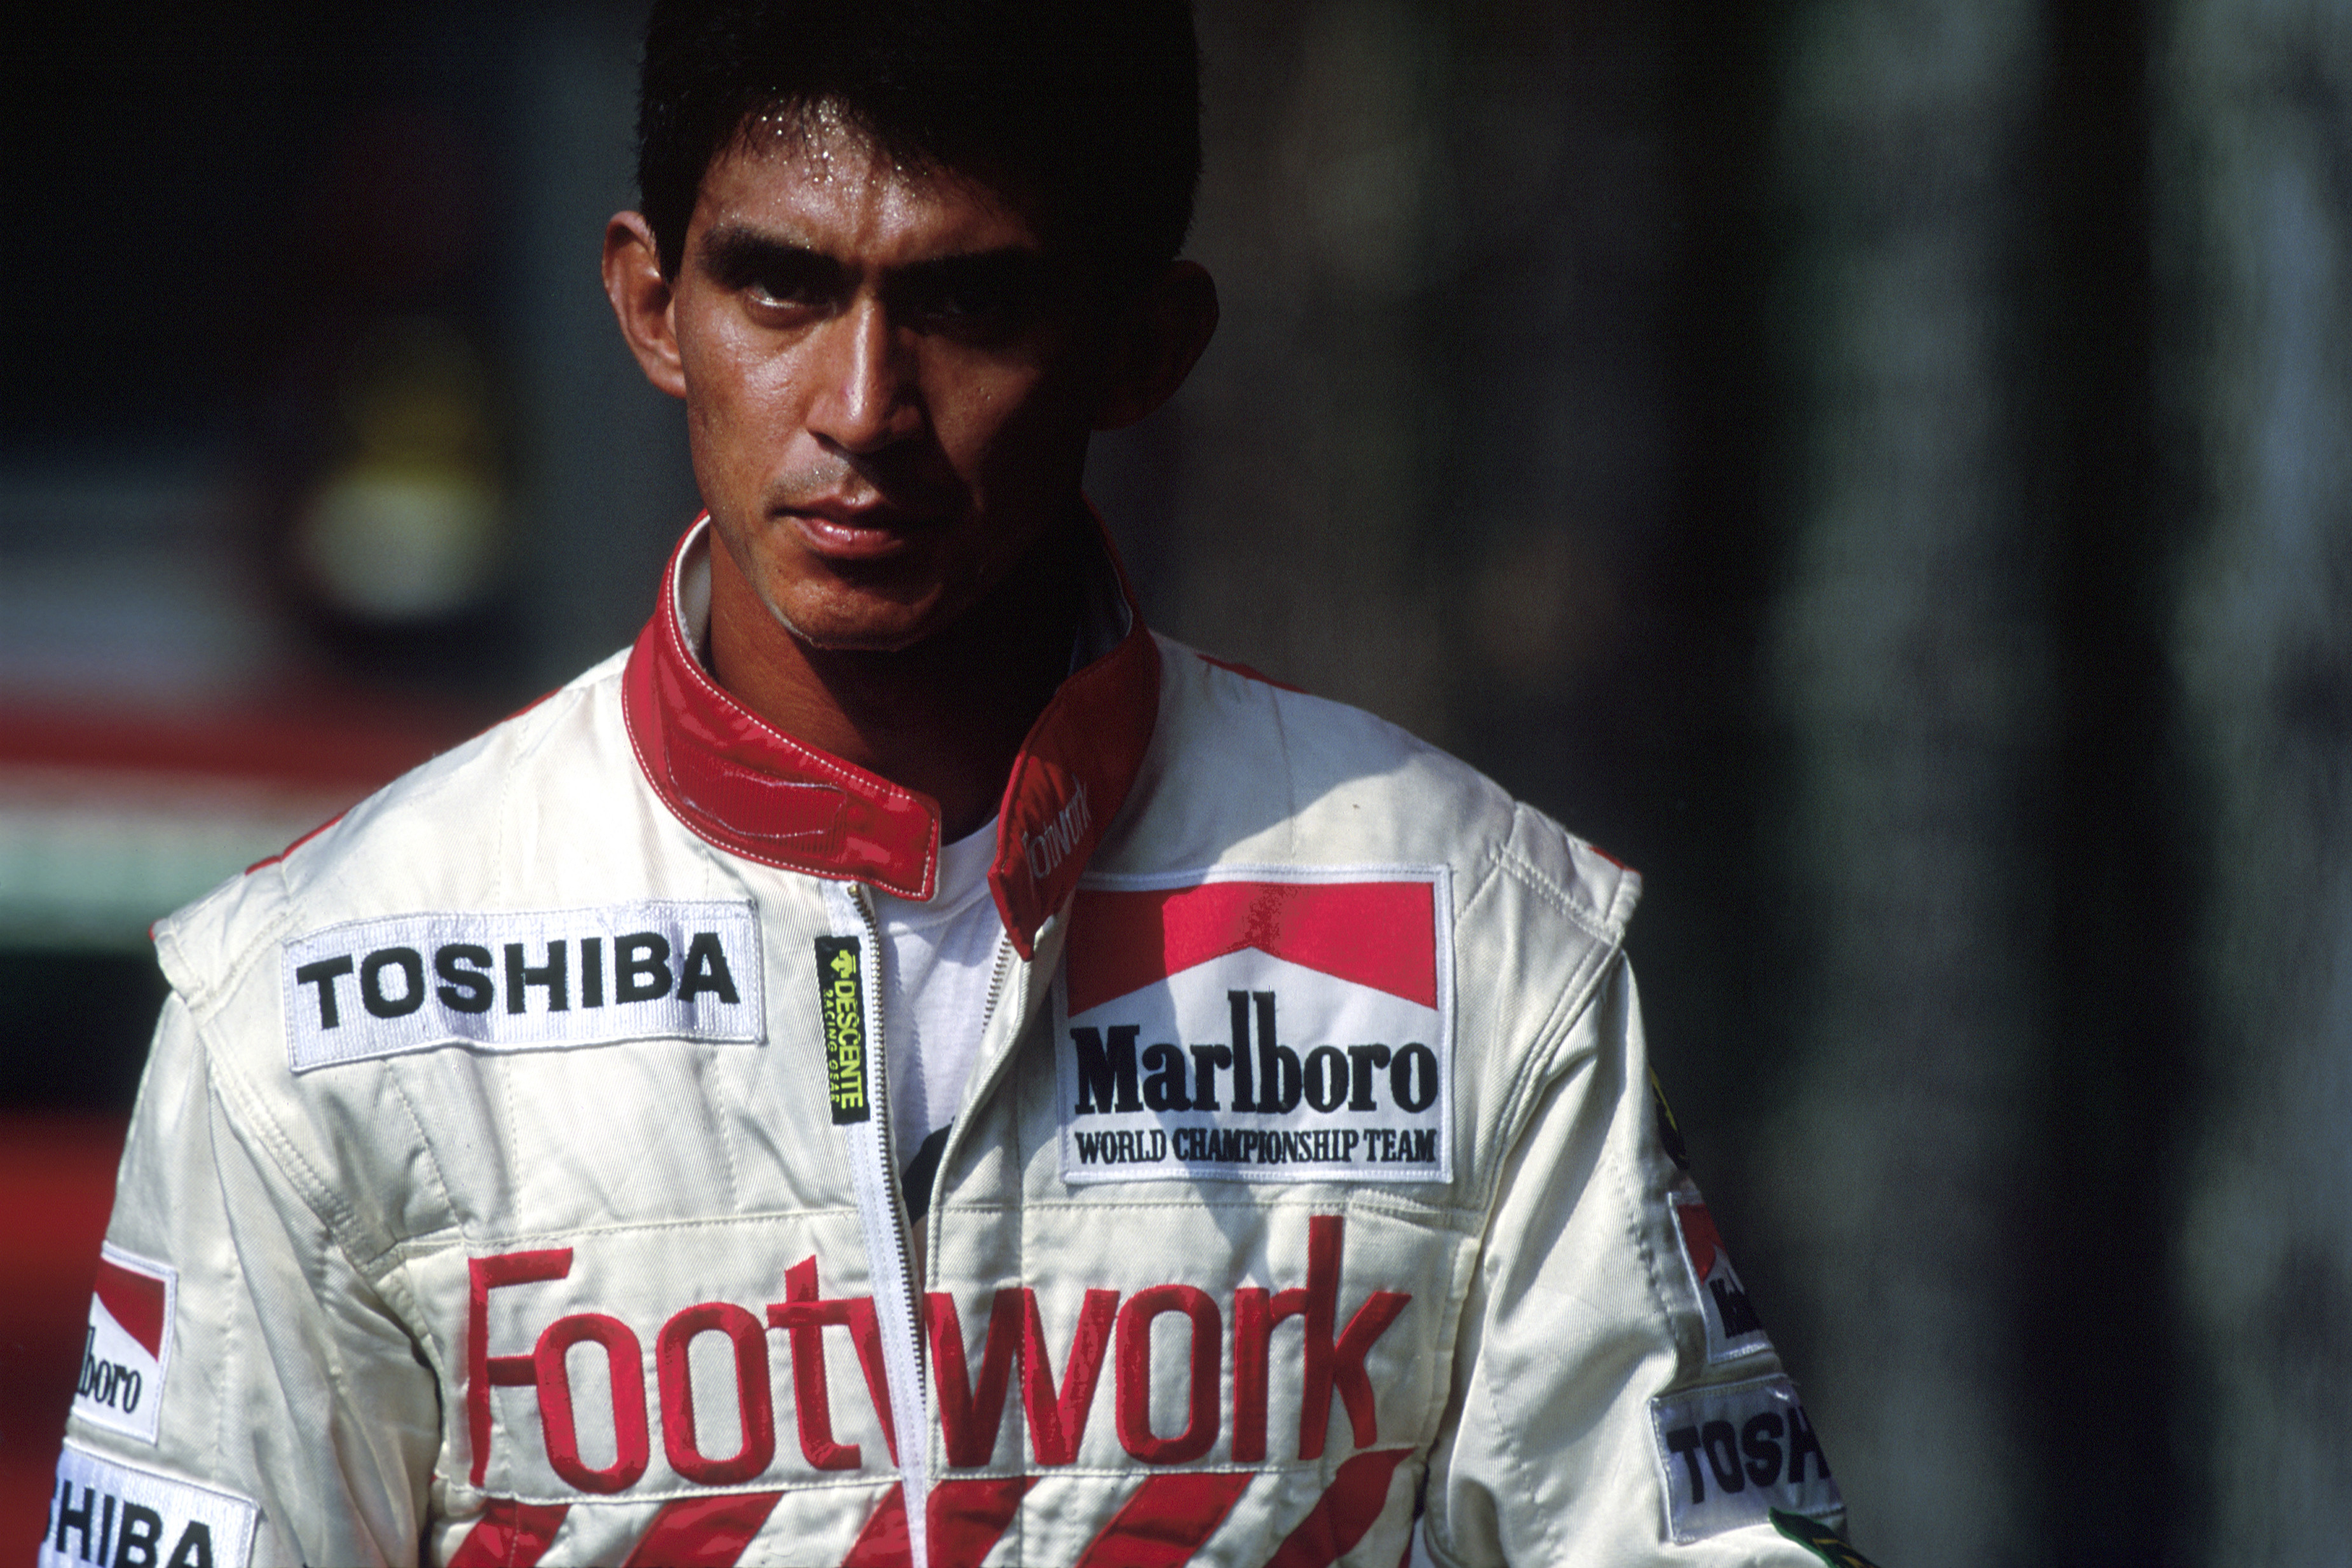 鈴木亜久里　すずき・あぐり　1960年９月８日生まれ。東京都出身。1988年にラルースからスポット参戦し、その後、ザクスピード、フットワーク、ジョーダン、リジェに所属。90年に鈴鹿サーキットで開催された日本GPでは日本人としては初の３位表彰台を獲得。2006〜08年までは自らF1チーム「スーパーアグリ」を立ち上げ、オーナーとして参戦。同チームには佐藤琢磨も所属した。桜井淳雄●撮影　photo by Sakurai Atsuo